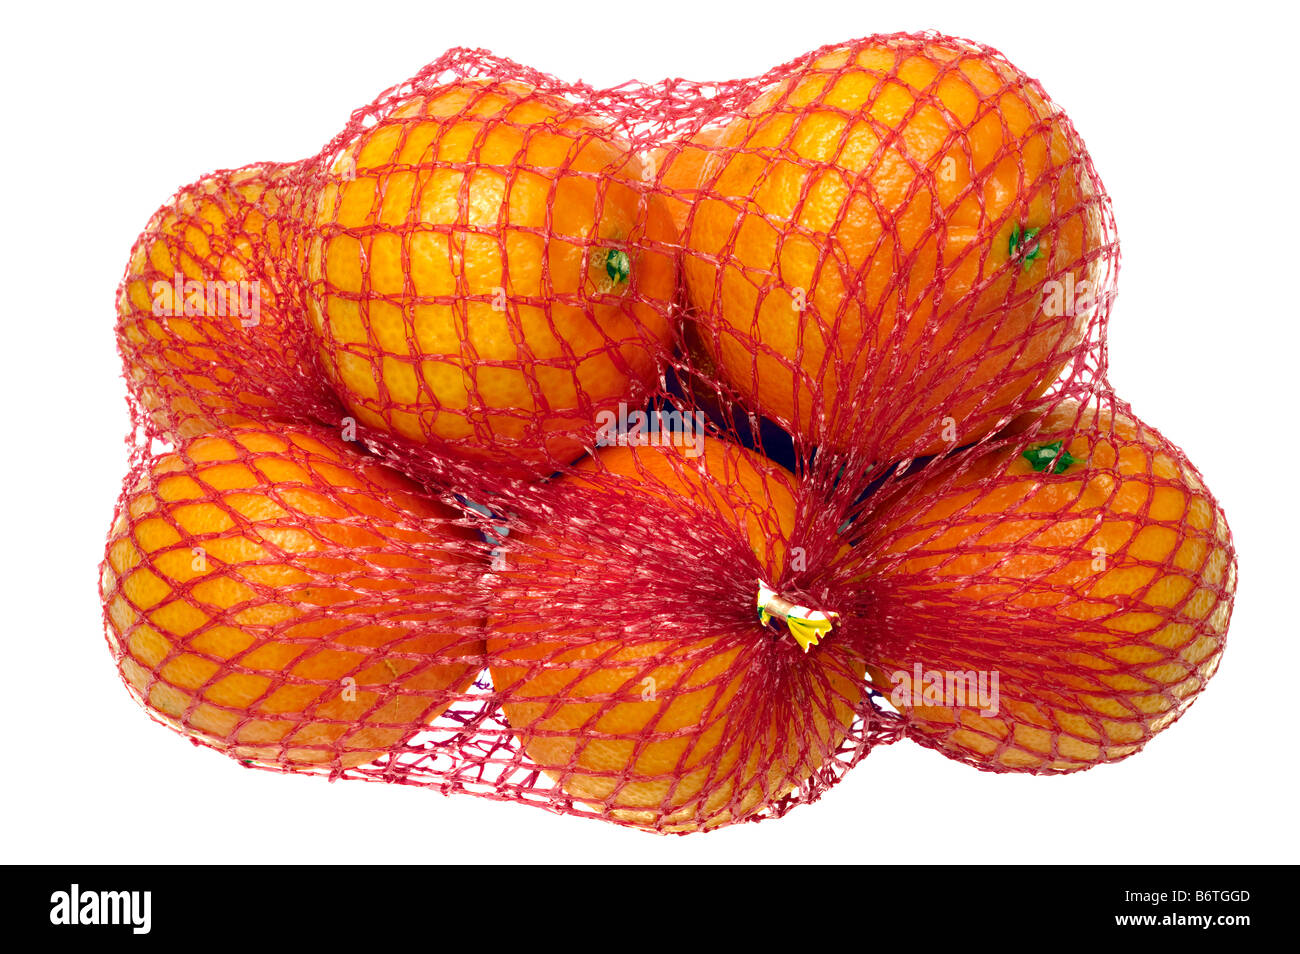 Un pack de clementinas en una bolsa de red de malla roja Foto de stock